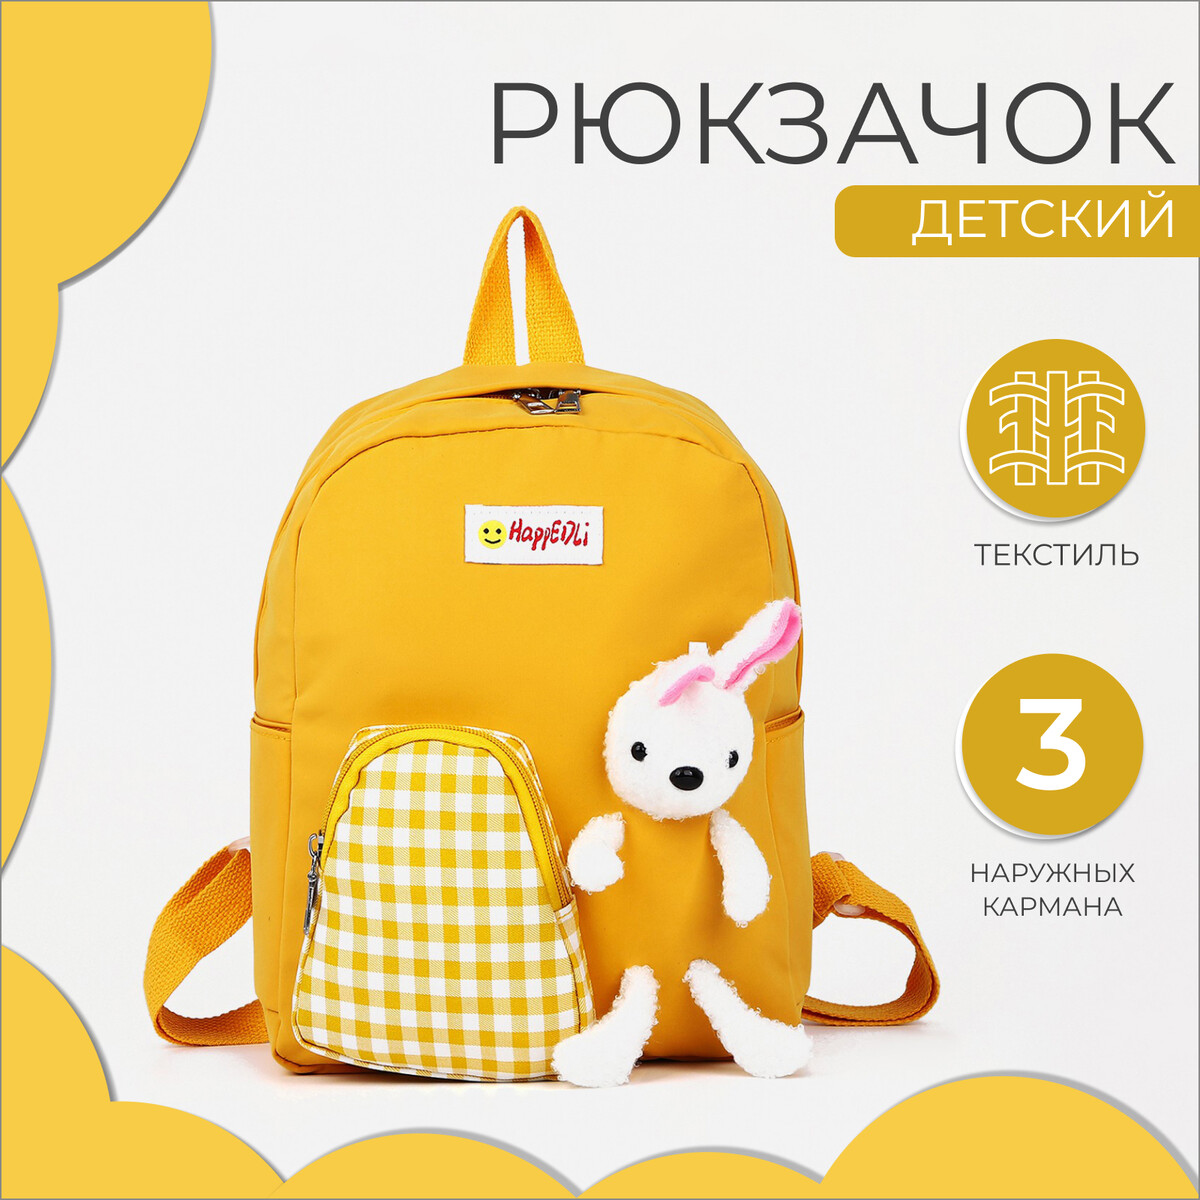 Рюкзак детский на молнии, 3 наружных кармана, цвет желтый